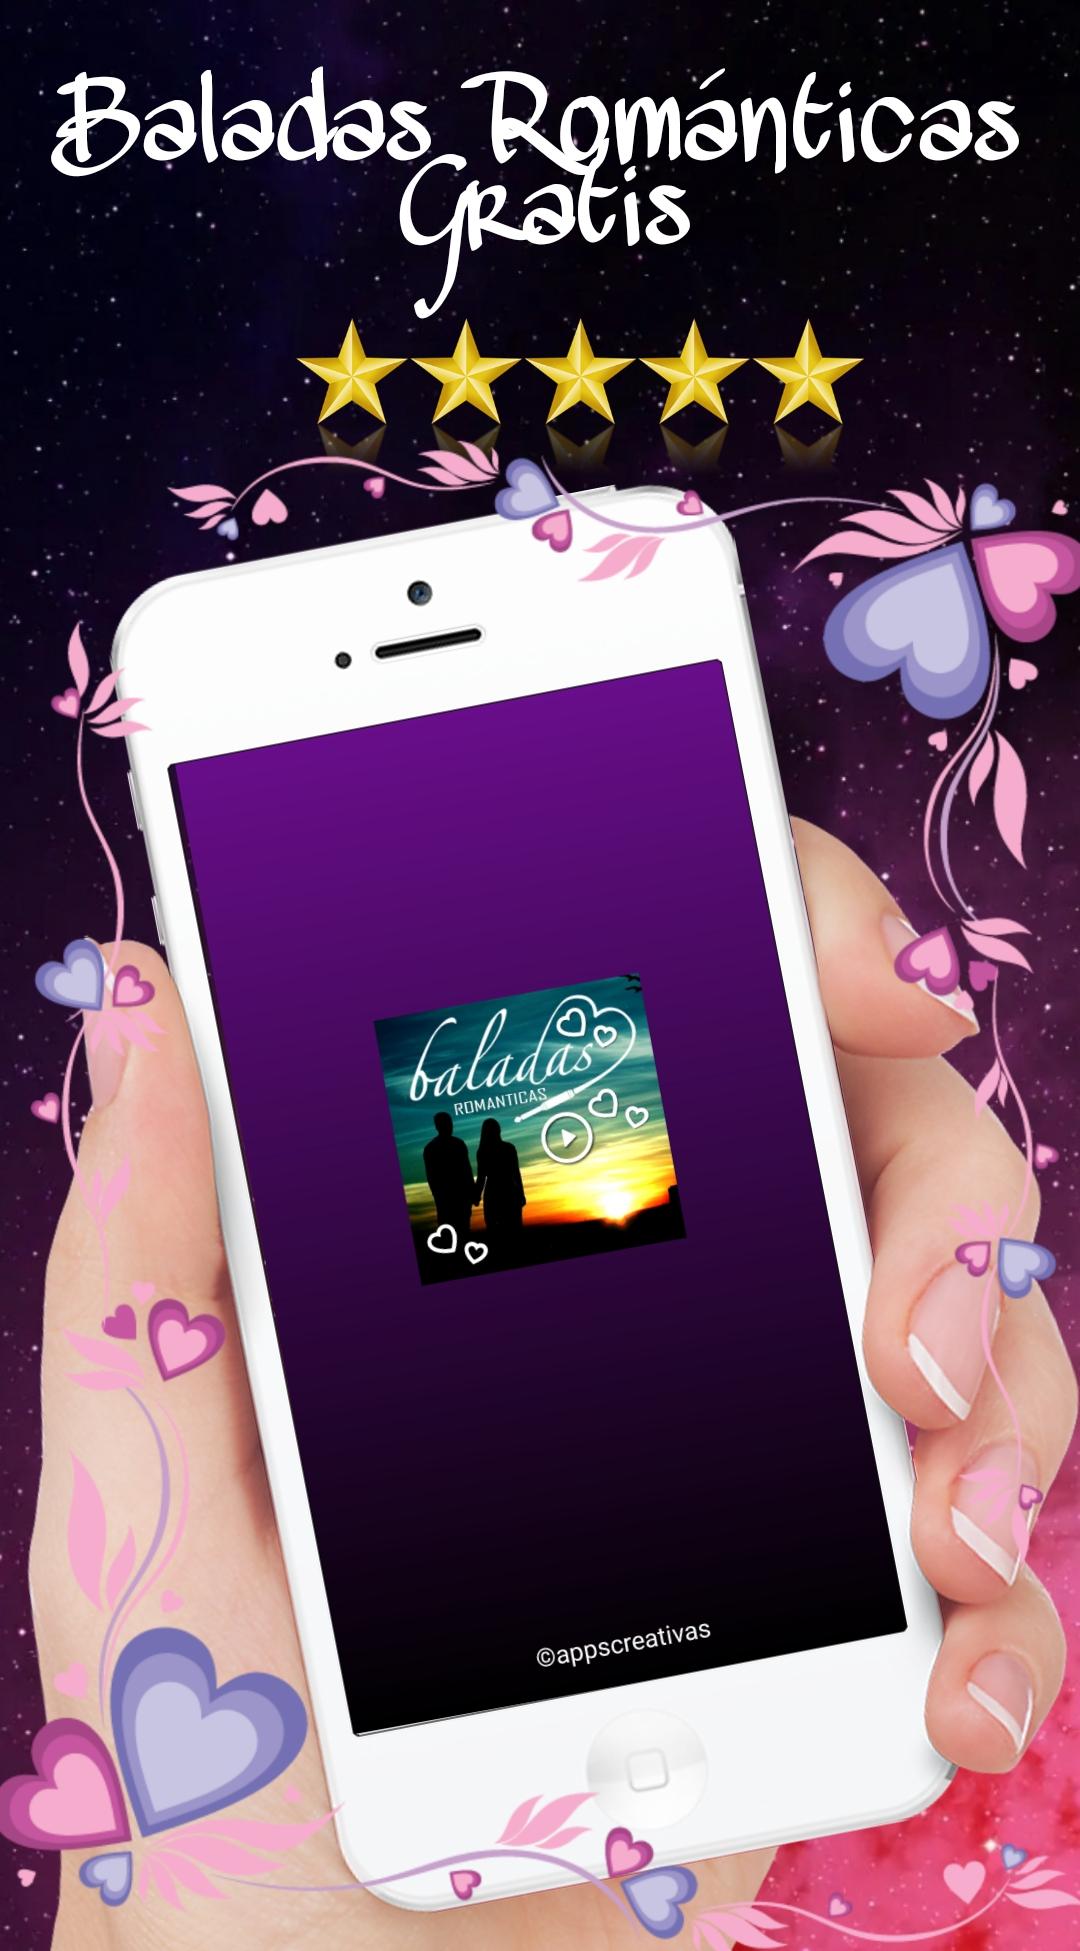 Baladas Romanticas for Android - APK Download